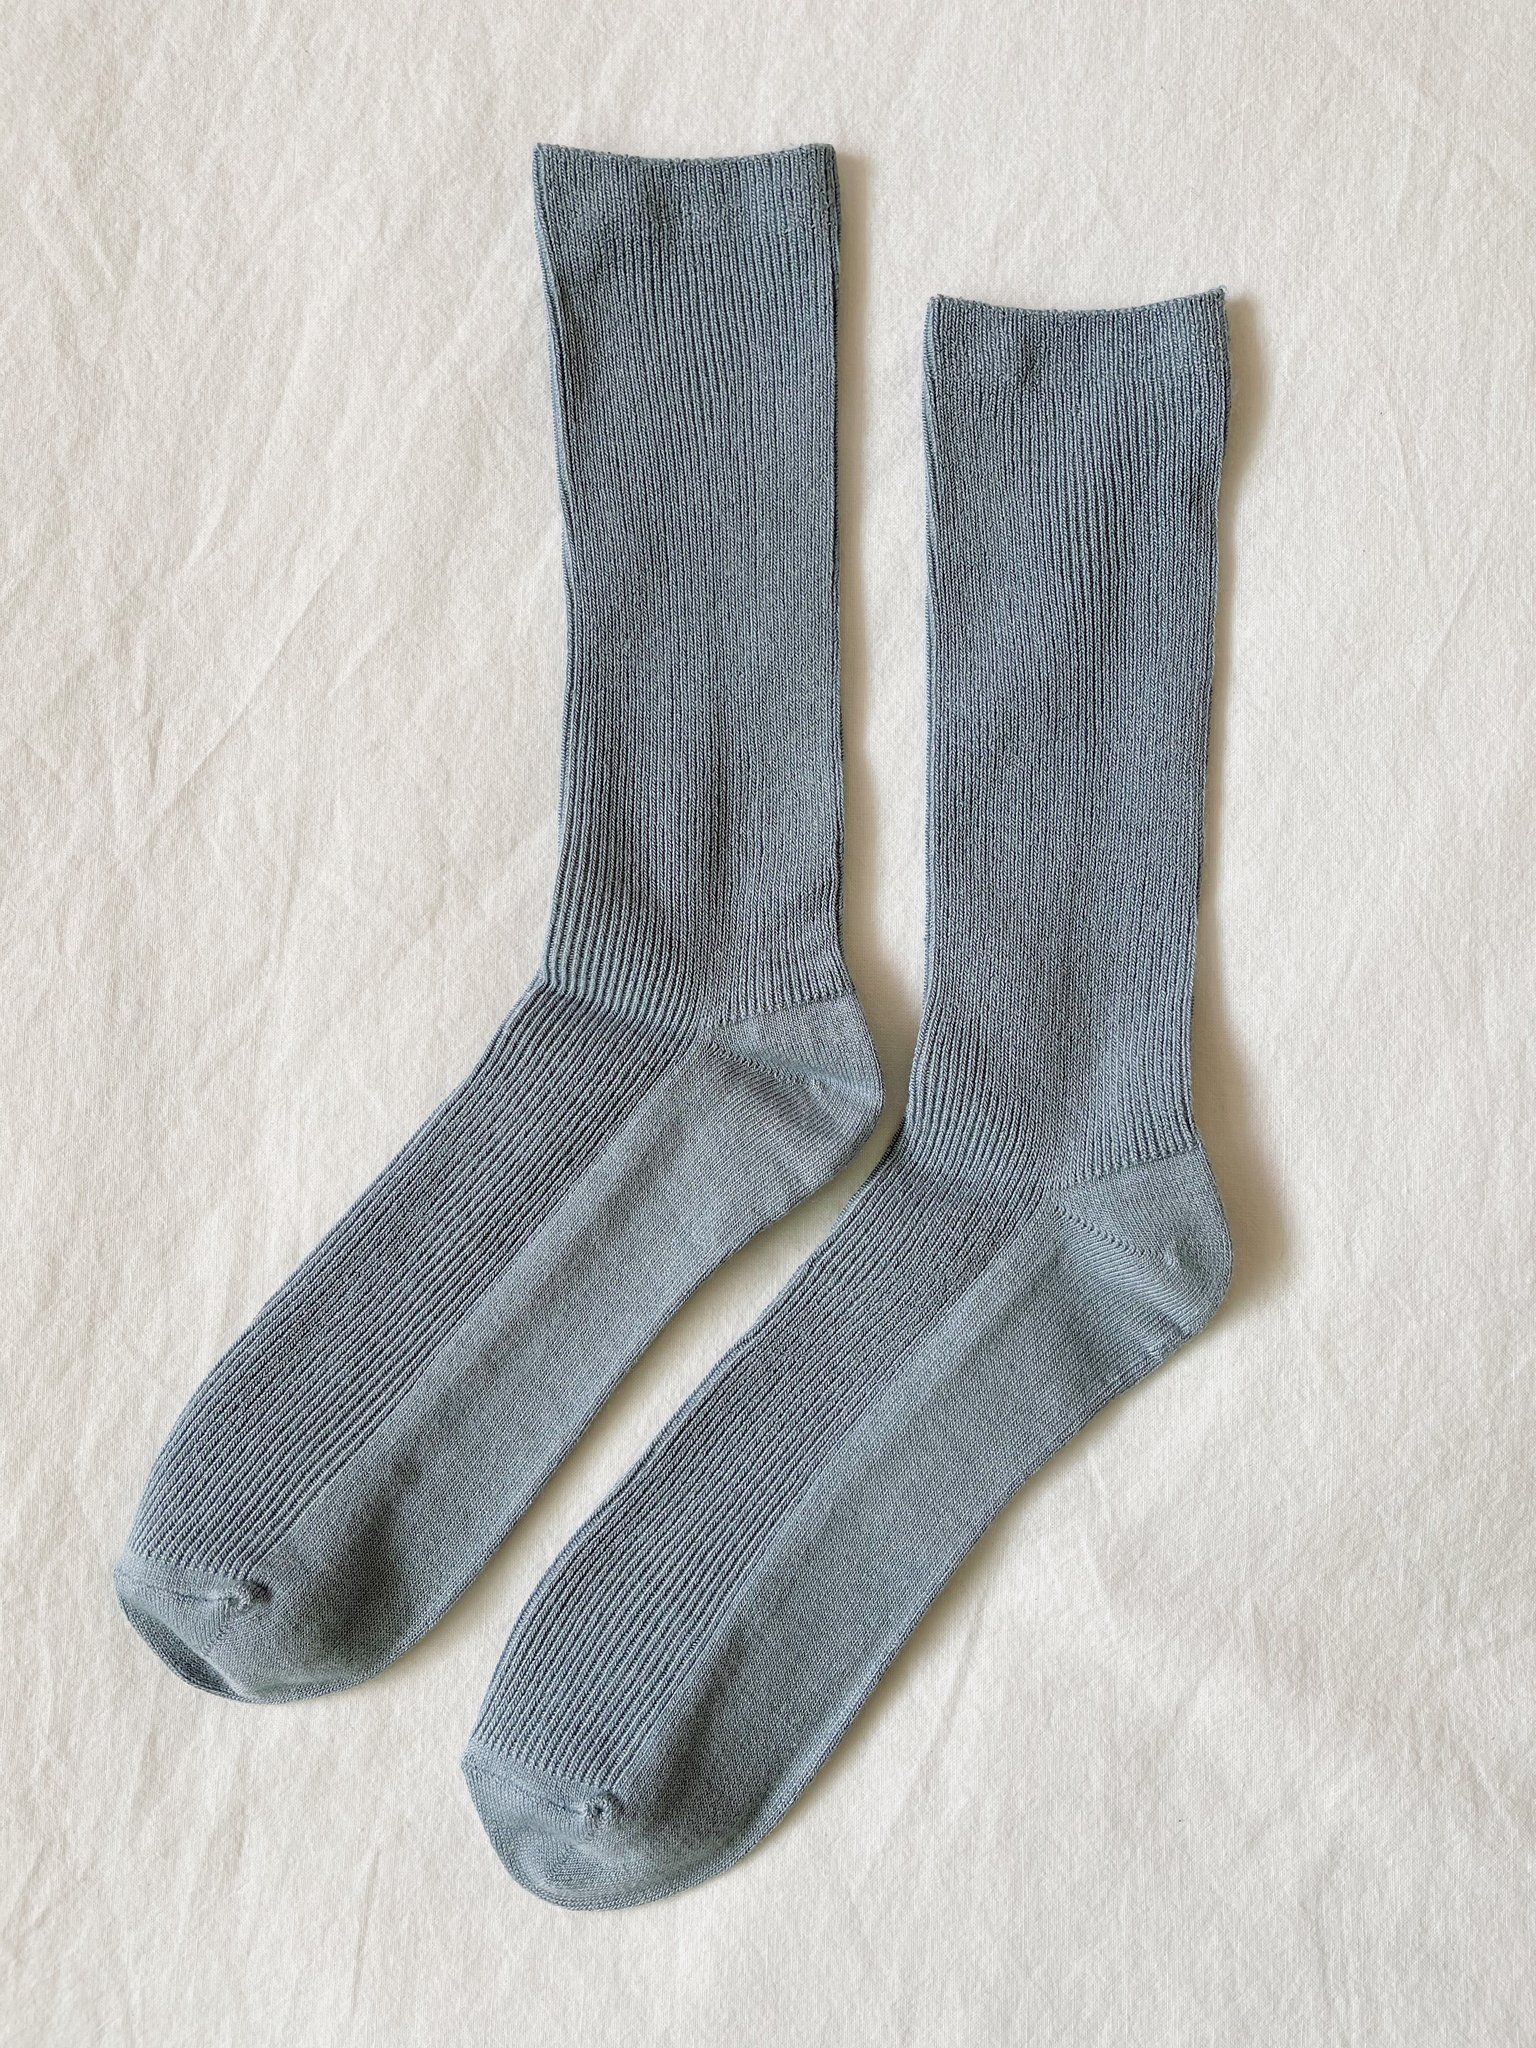 Product Image for Trouser Socks, Bluebell